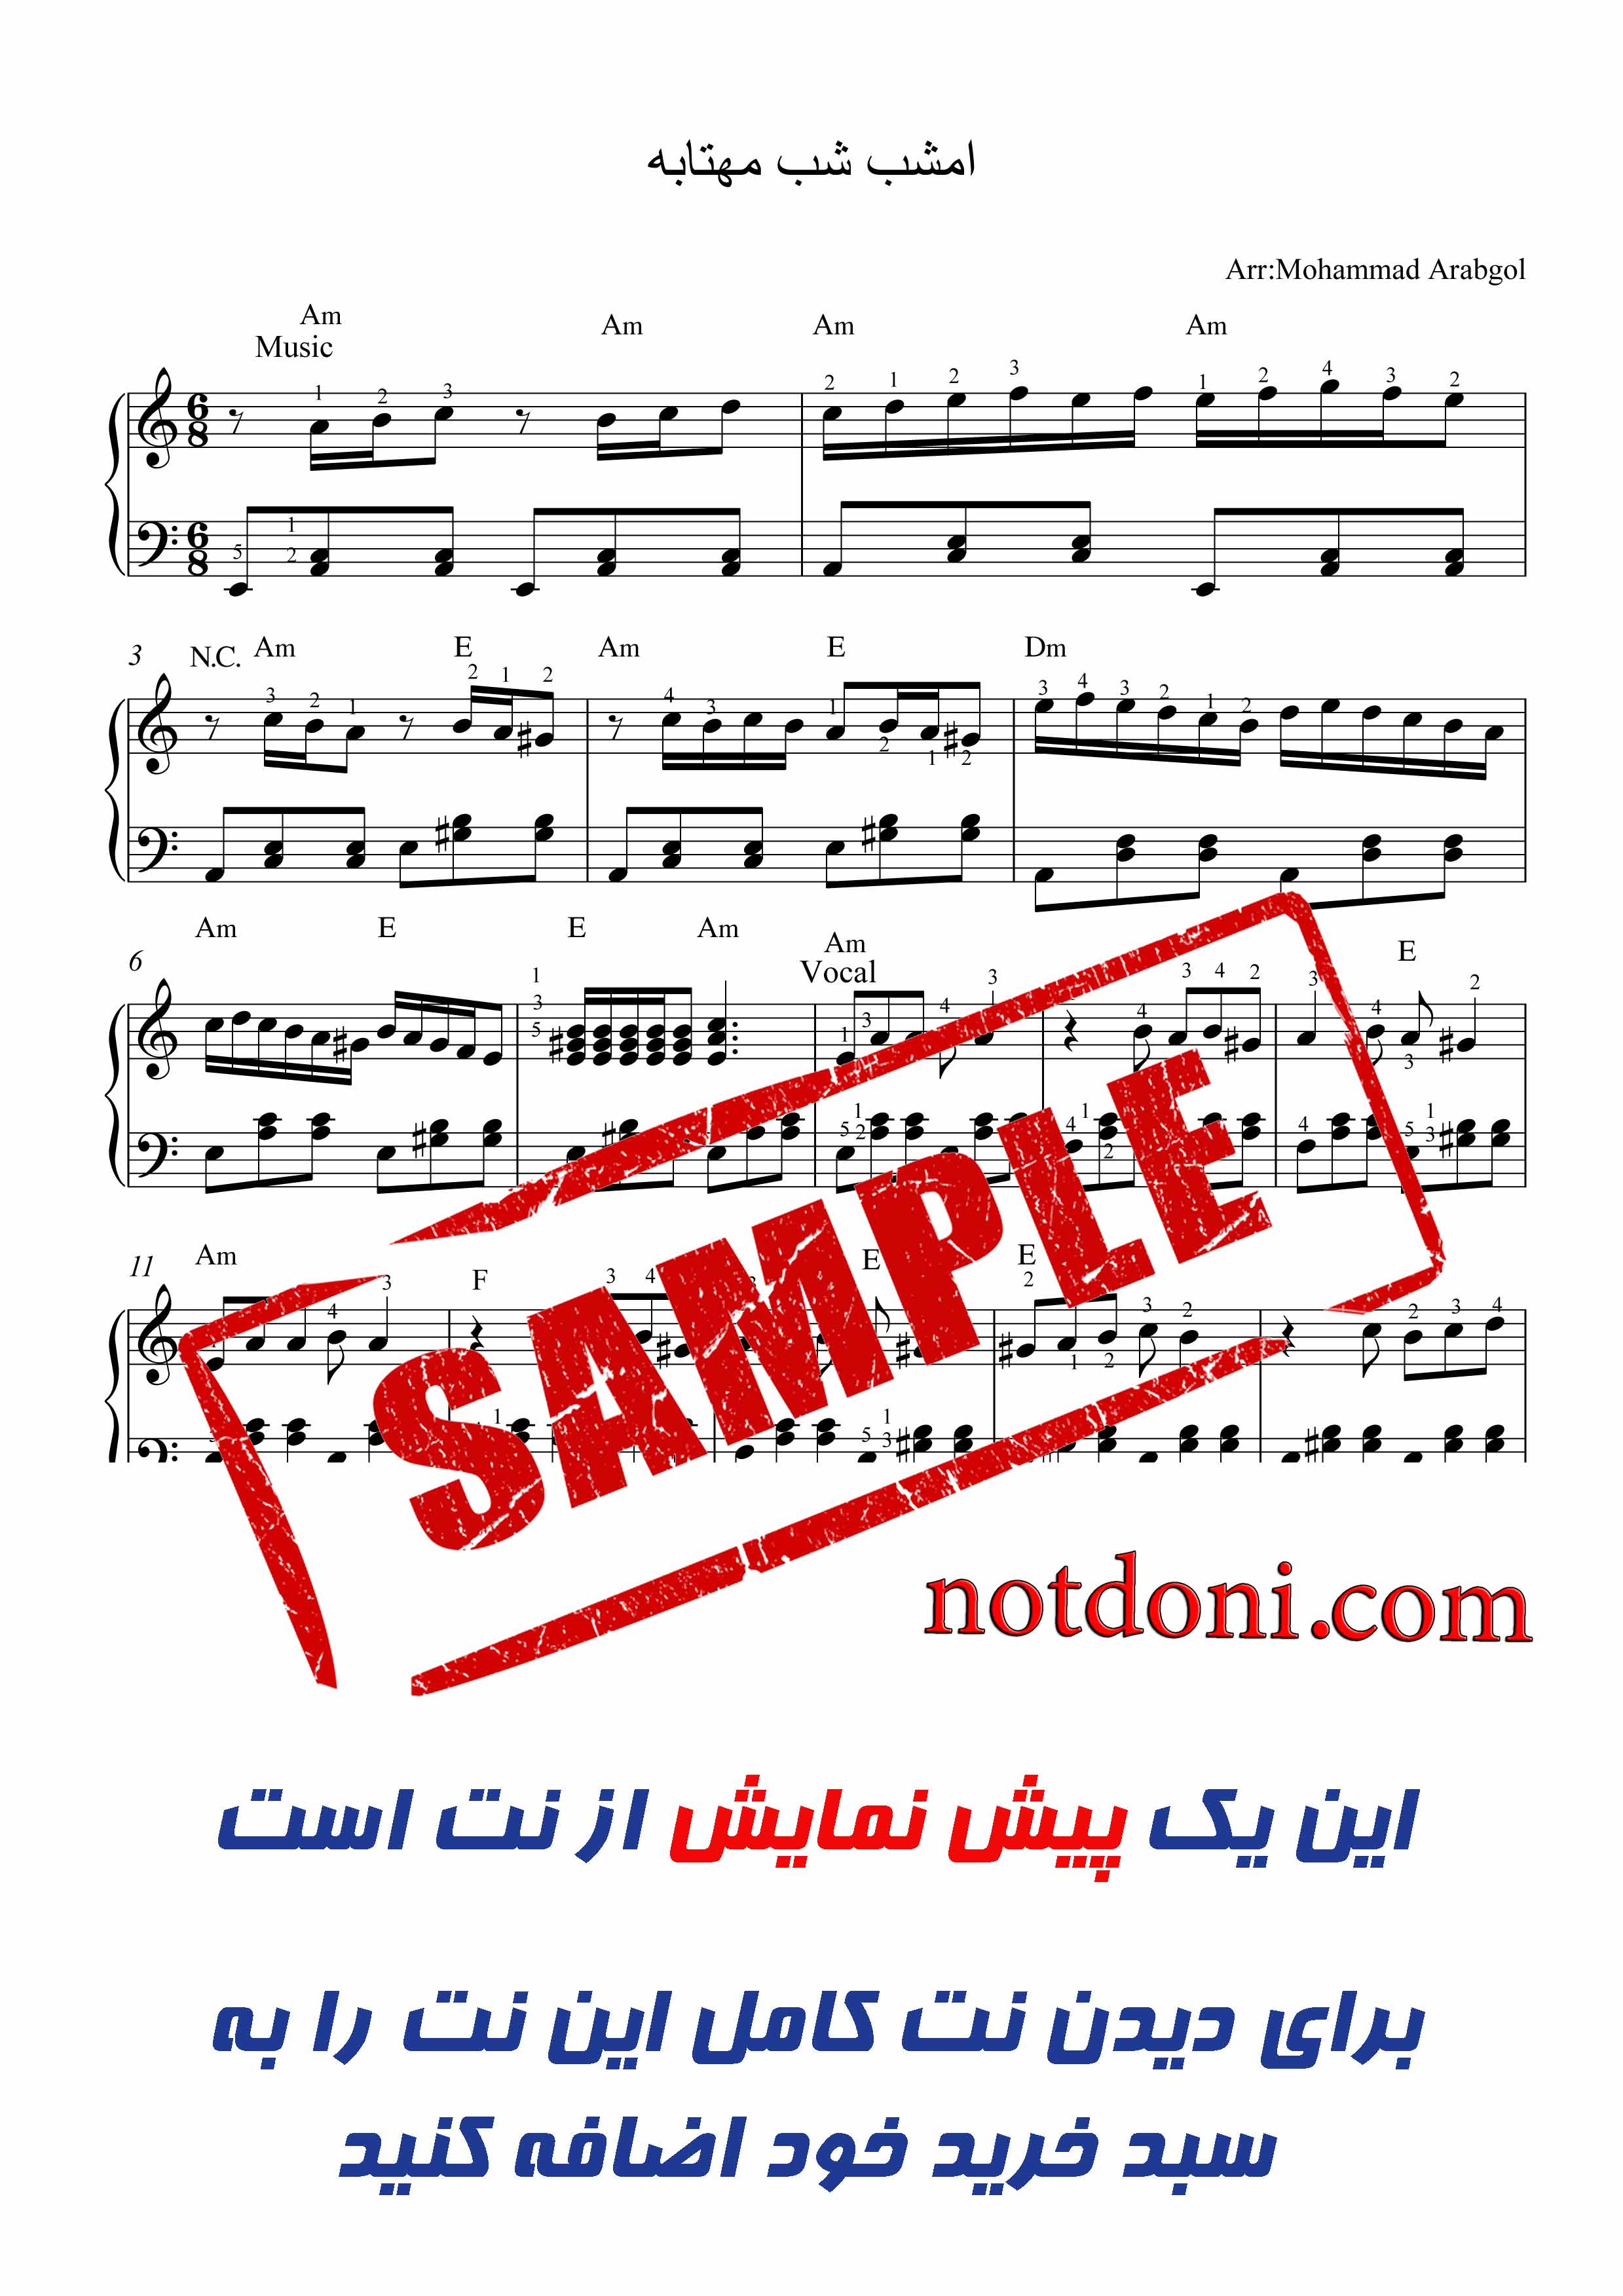 نت ساده امشب شب مهتابه برای پیانو با تنظیم محمد عربگل